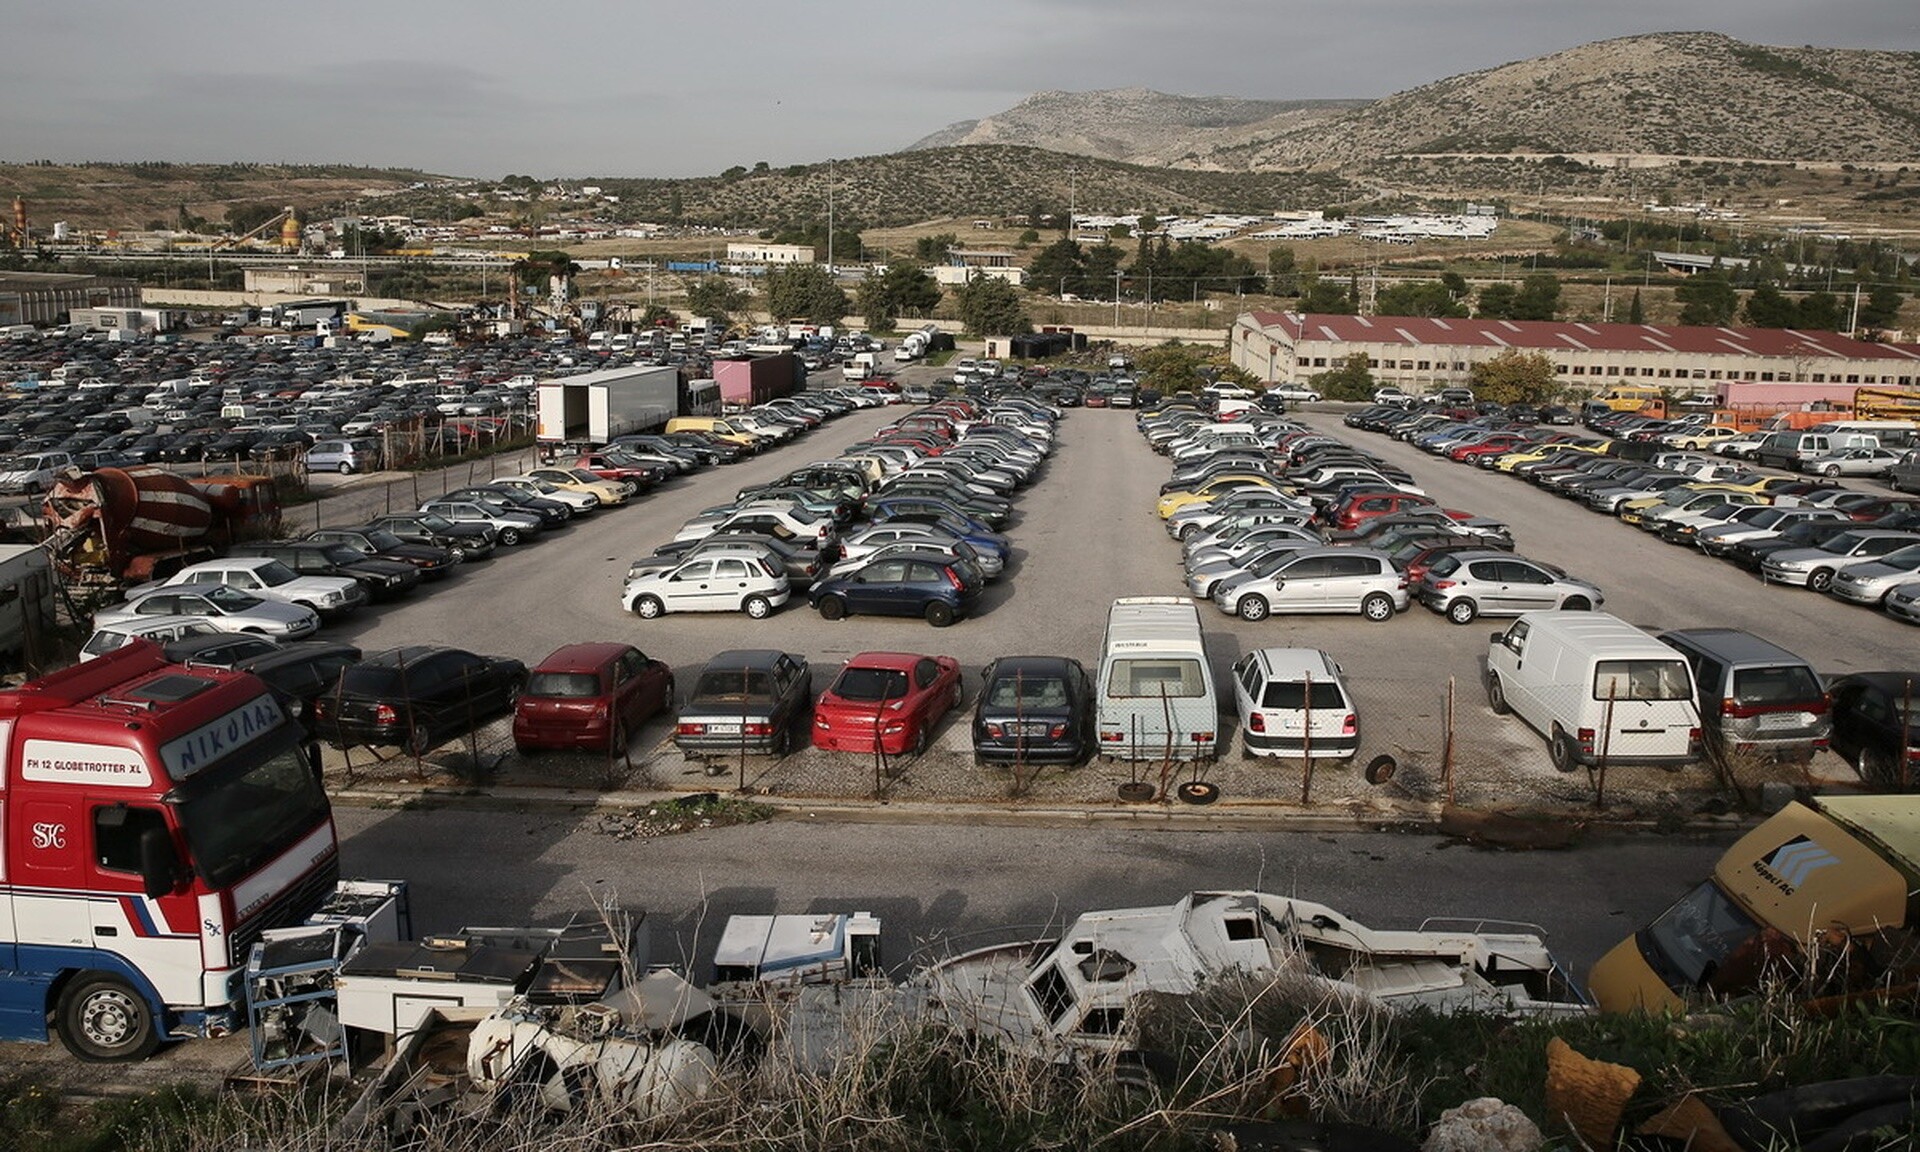 Αυτοκίνητα από 200 ευρώ: 42 οχήματα περιμένουν να τα αποκτήσετε - Πότε ανοίγει η αποθήκη